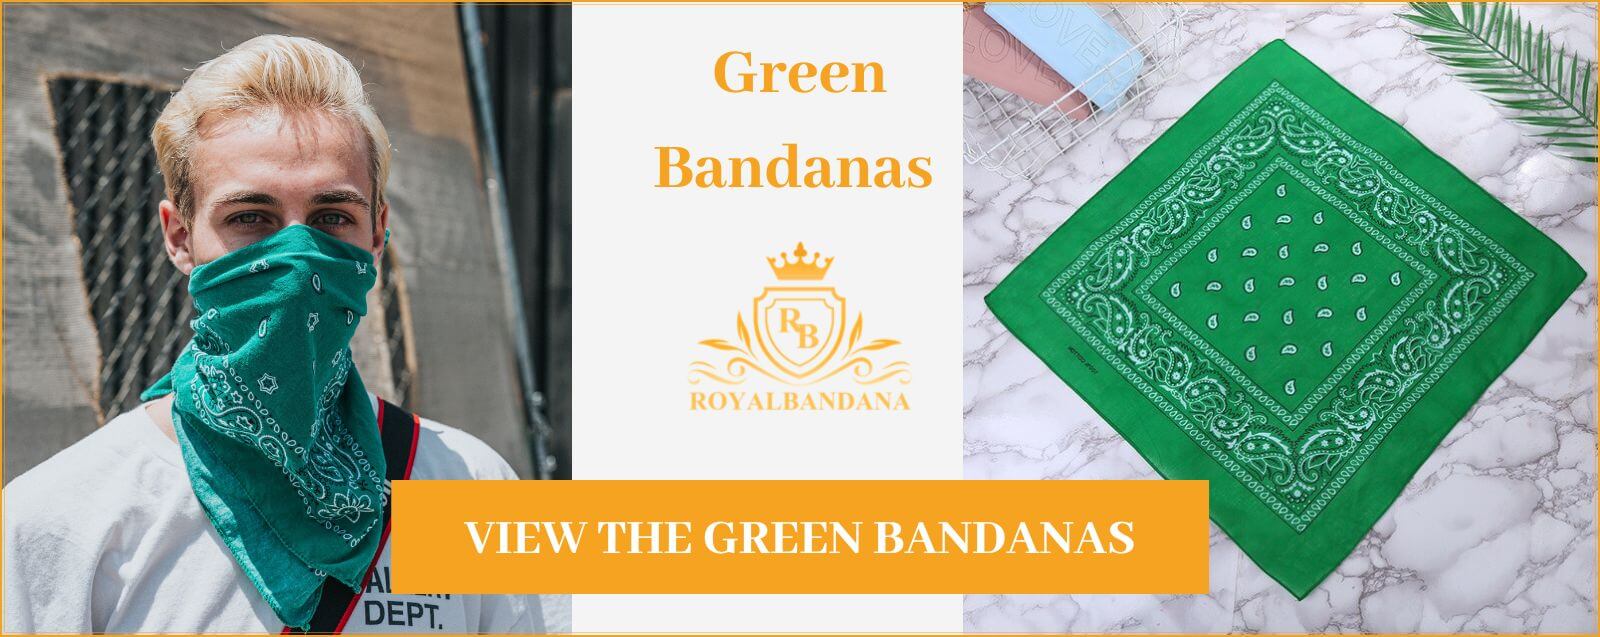 bandana-color-green